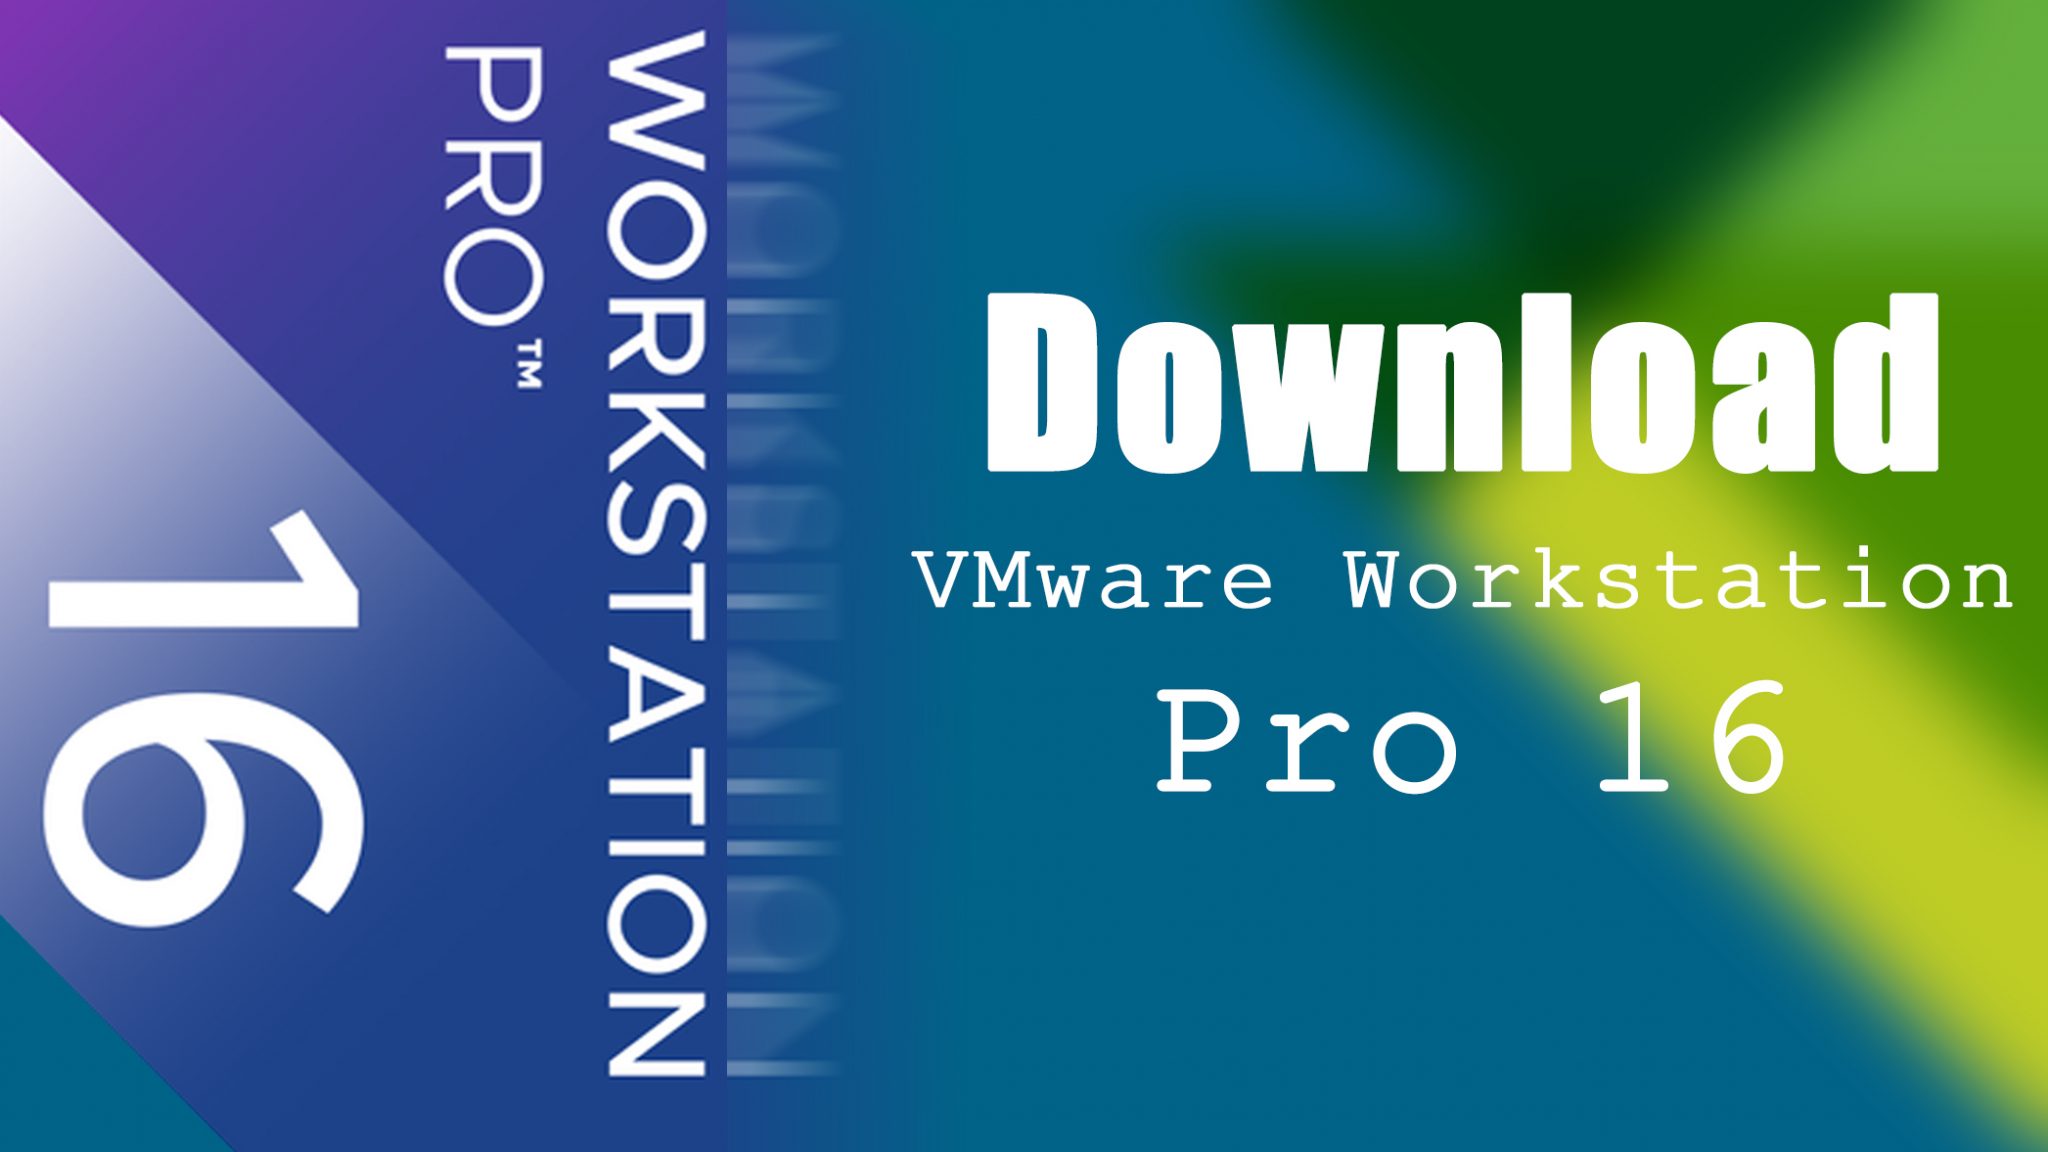 vmware workstation 16.1.0 download